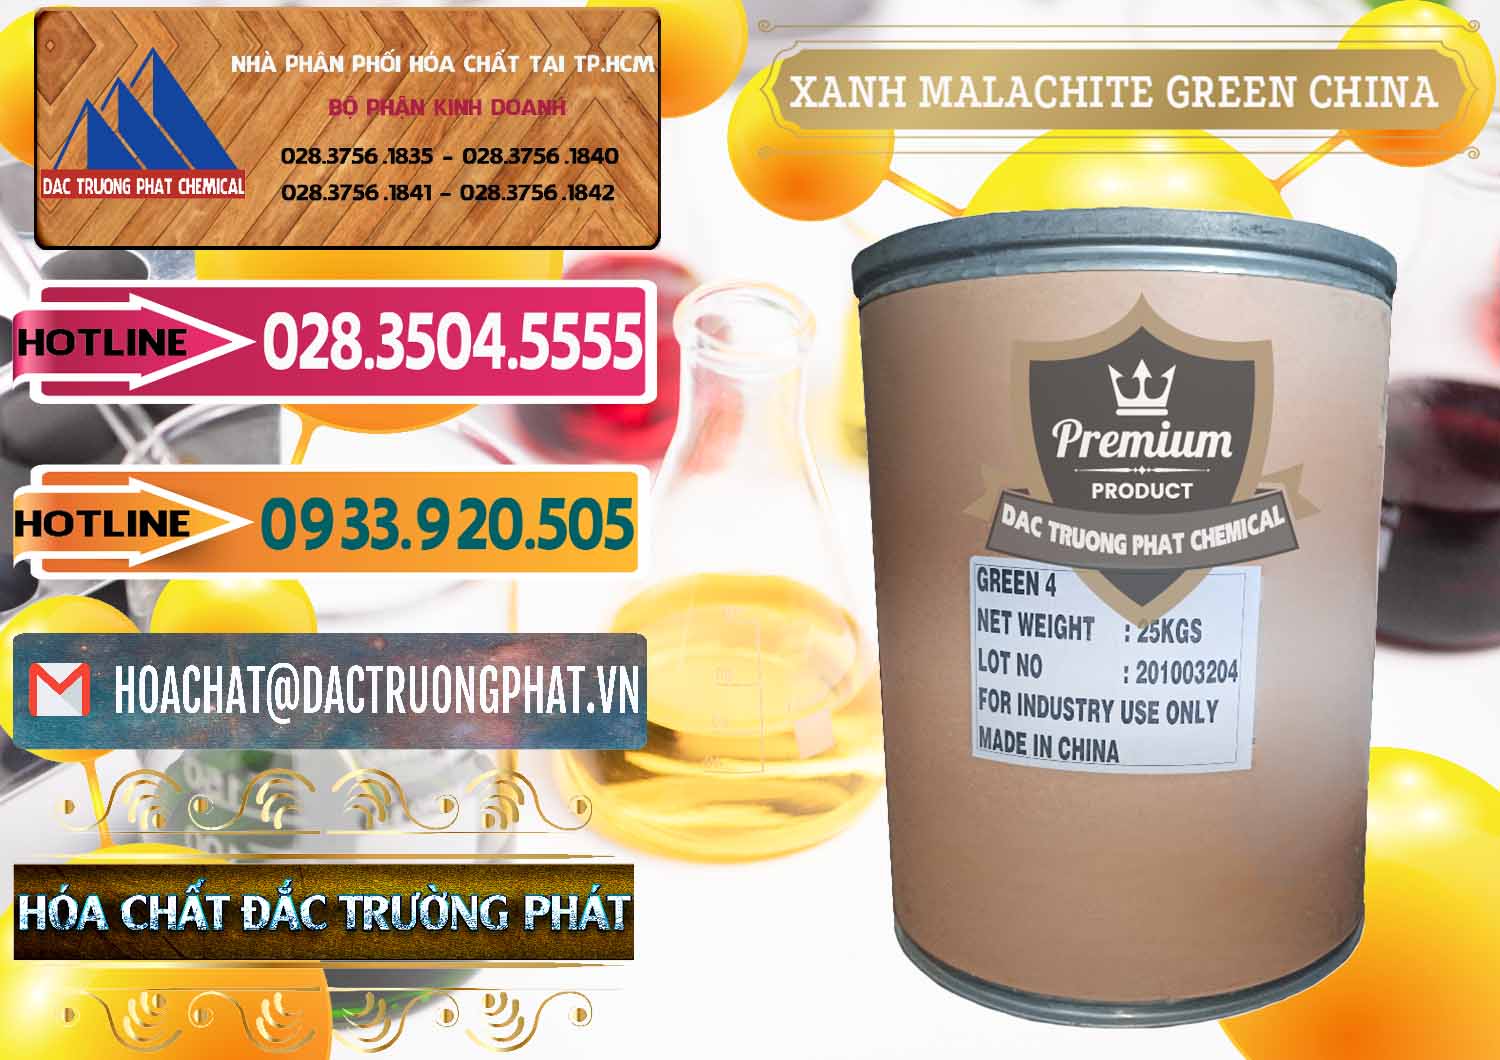 Bán - cung ứng Xanh Malachite Green Trung Quốc China - 0325 - Nhà phân phối ( nhập khẩu ) hóa chất tại TP.HCM - dactruongphat.vn